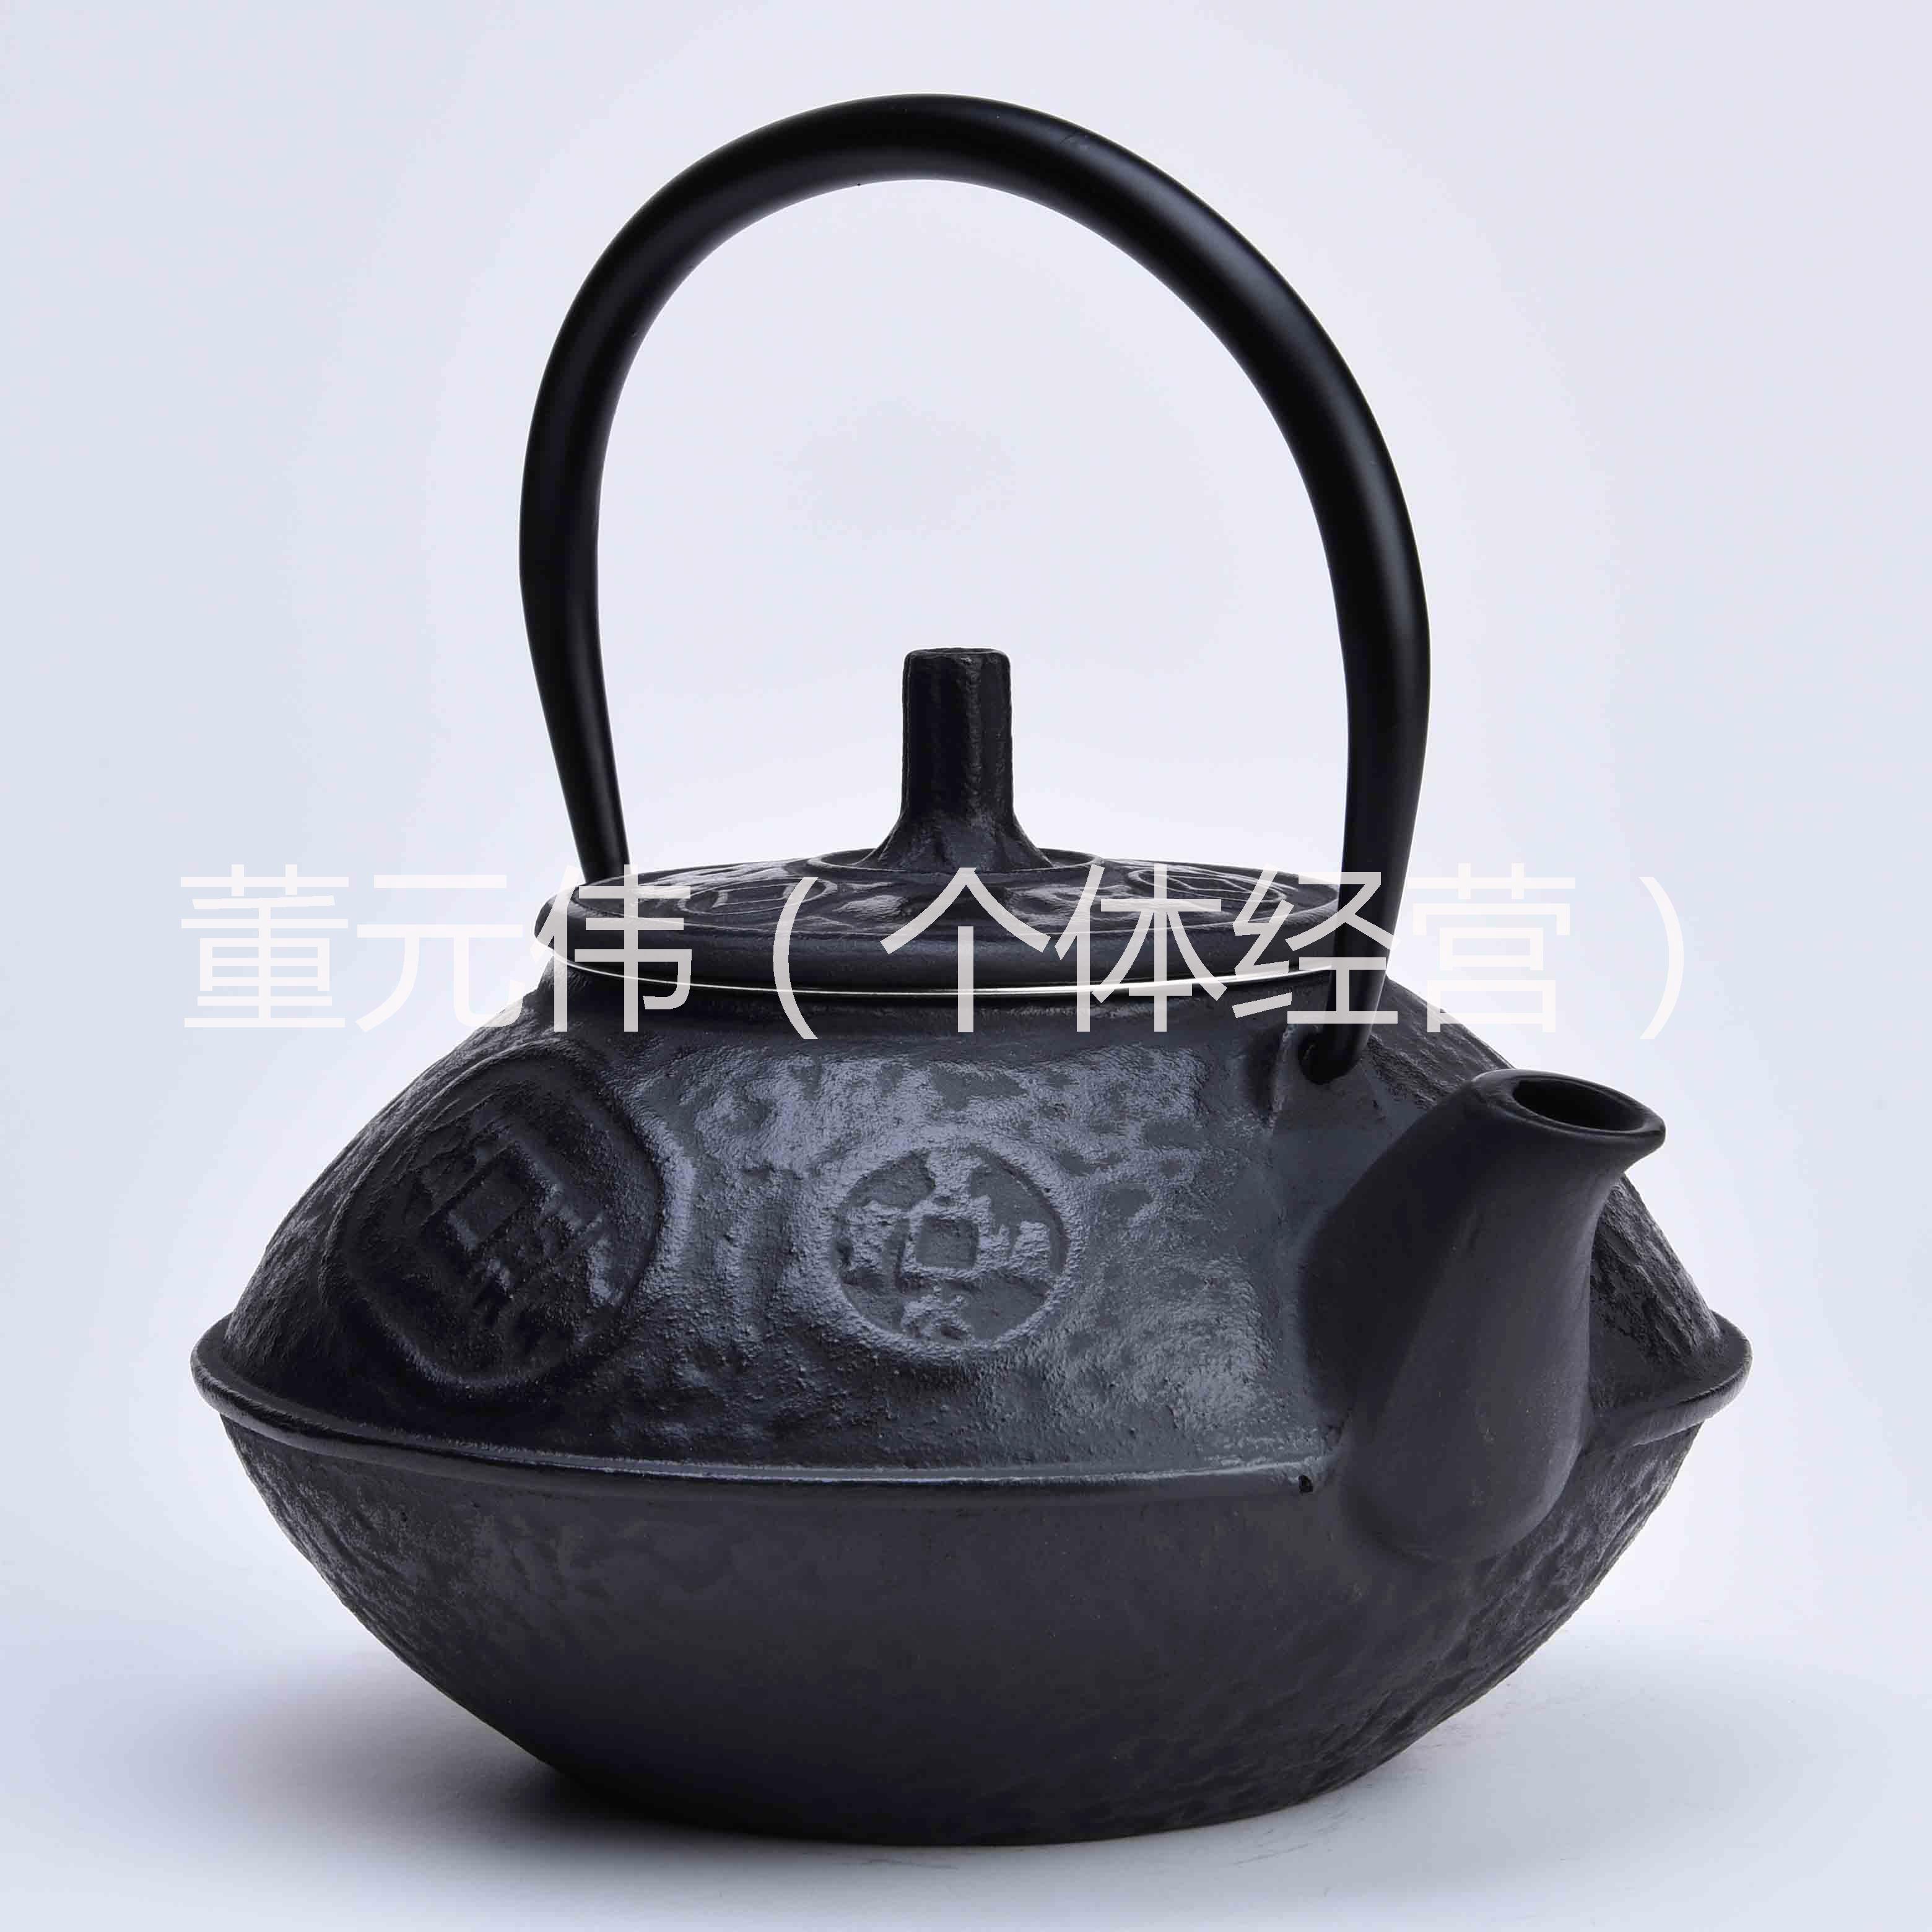 供应公佳铁茶壶古钱日本南部铁壶煮水壶铸铁壶泡茶壶